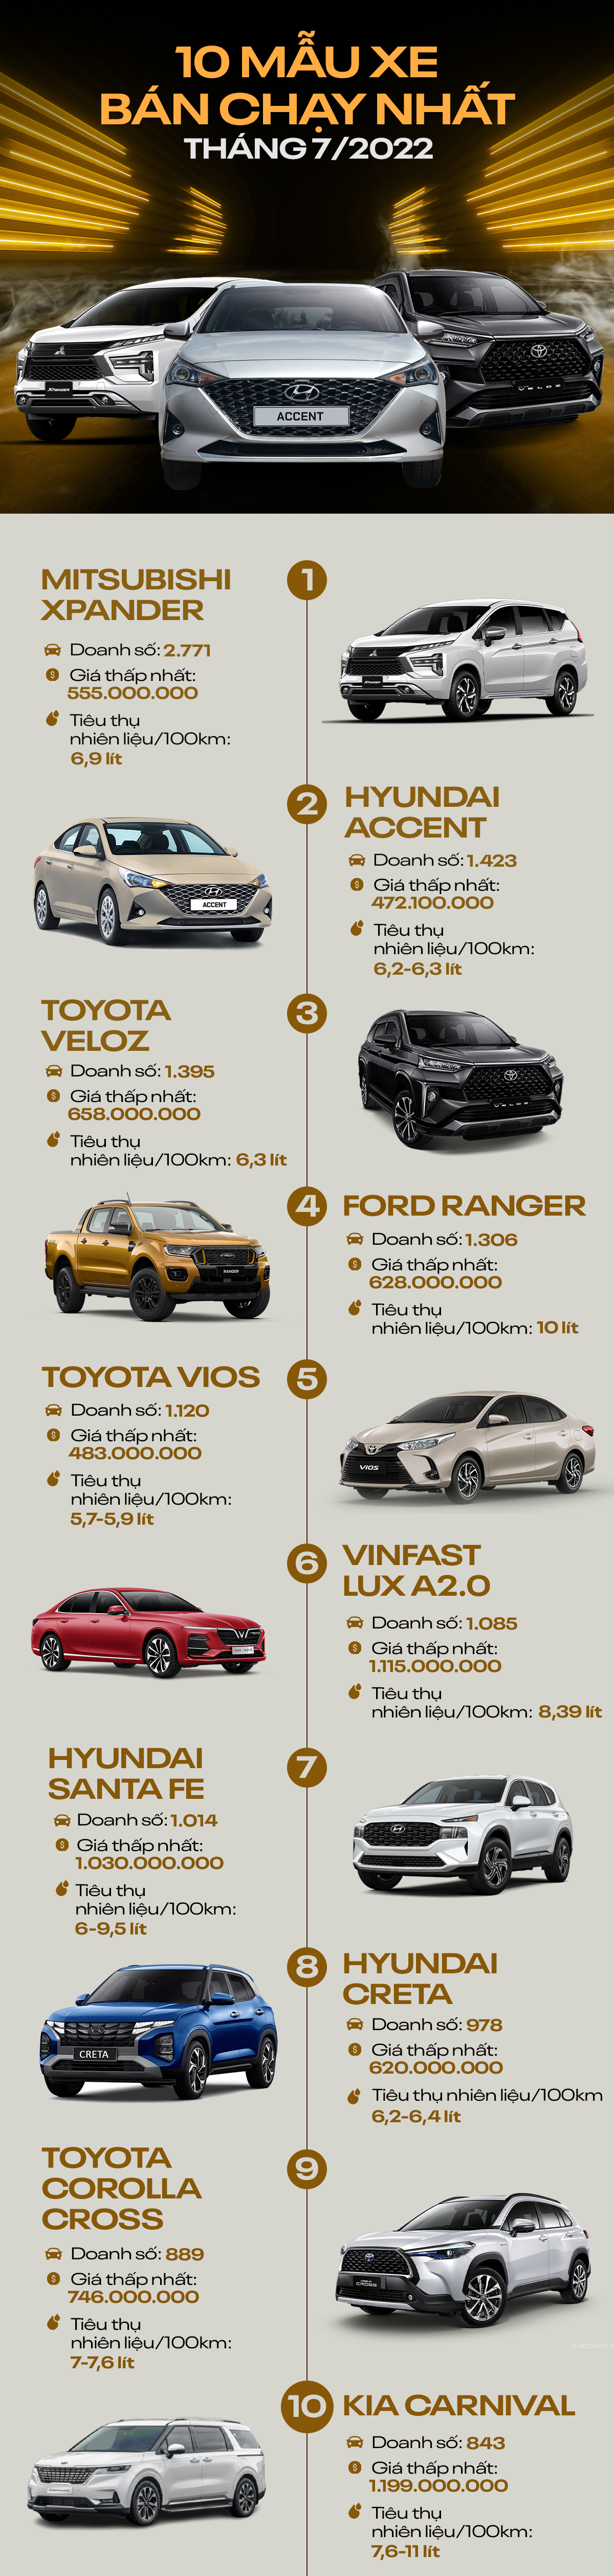 [Infographic] 10 mẫu ô tô bán chạy nhất tháng 7/2022: Mitsubishi Xpander bỏ xa các đối thủ - Ảnh 1.